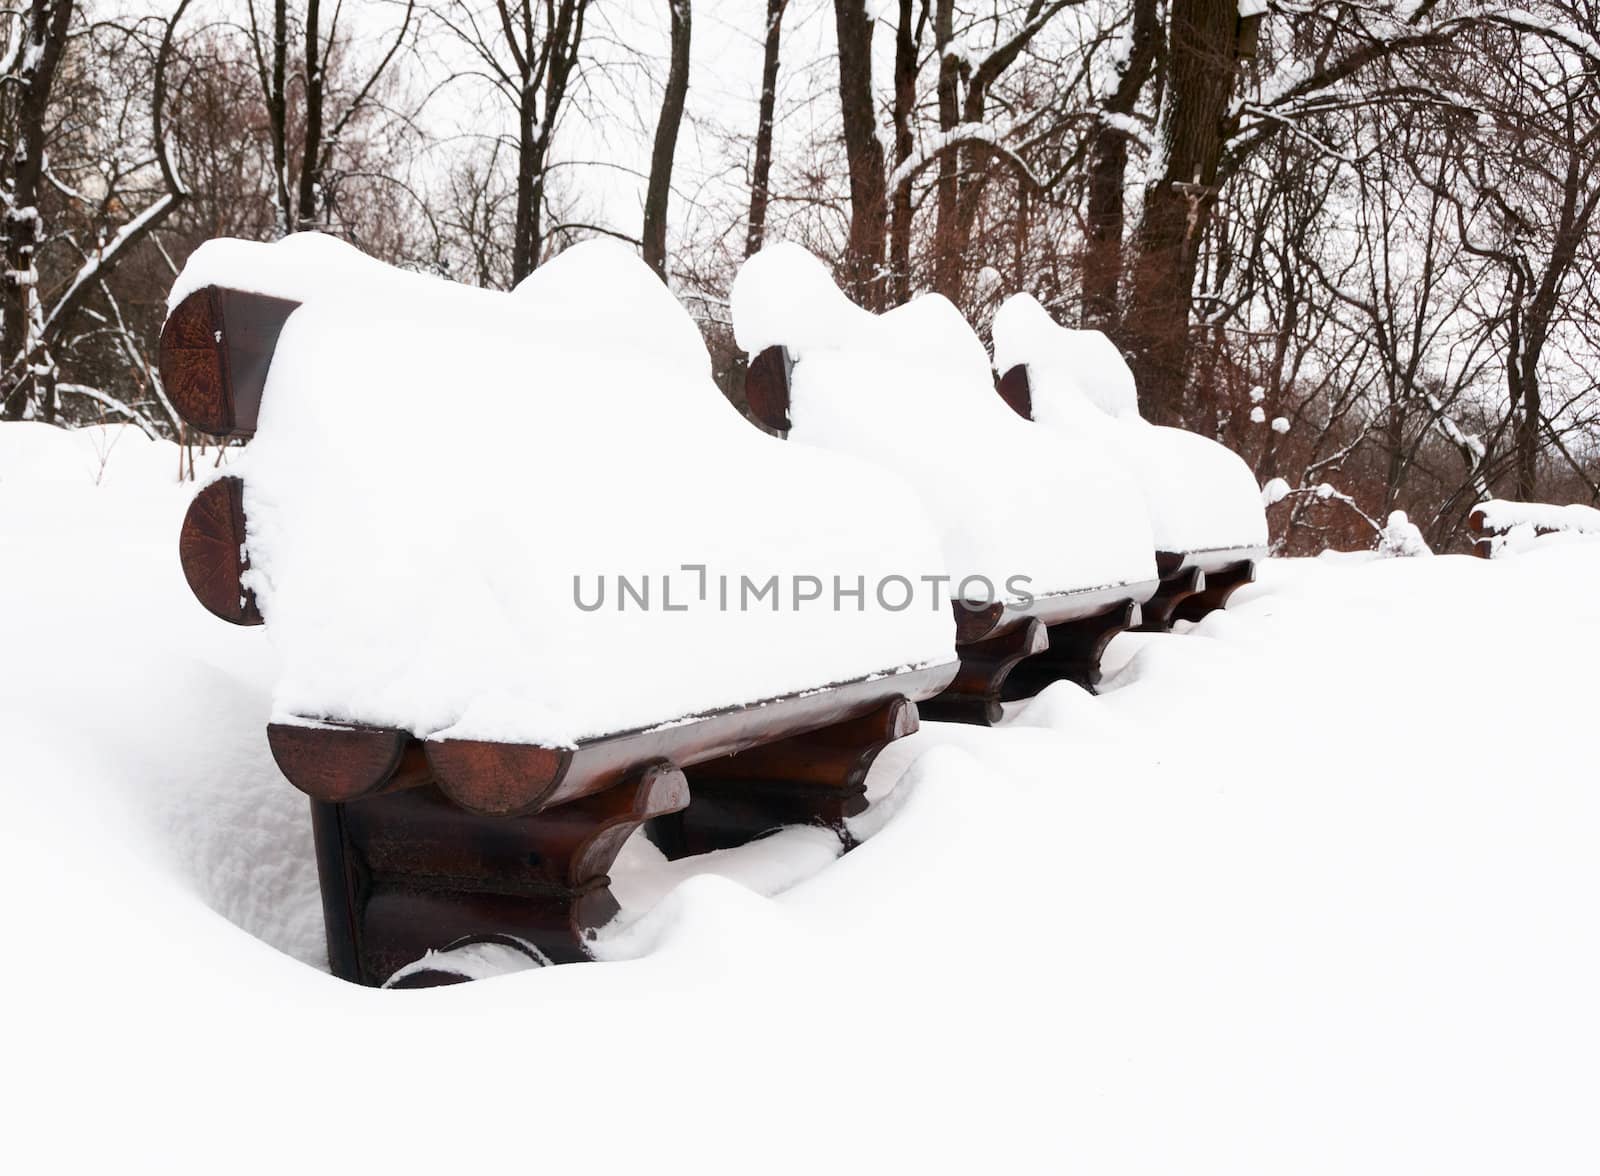 Snow winter in a park by iryna_rasko